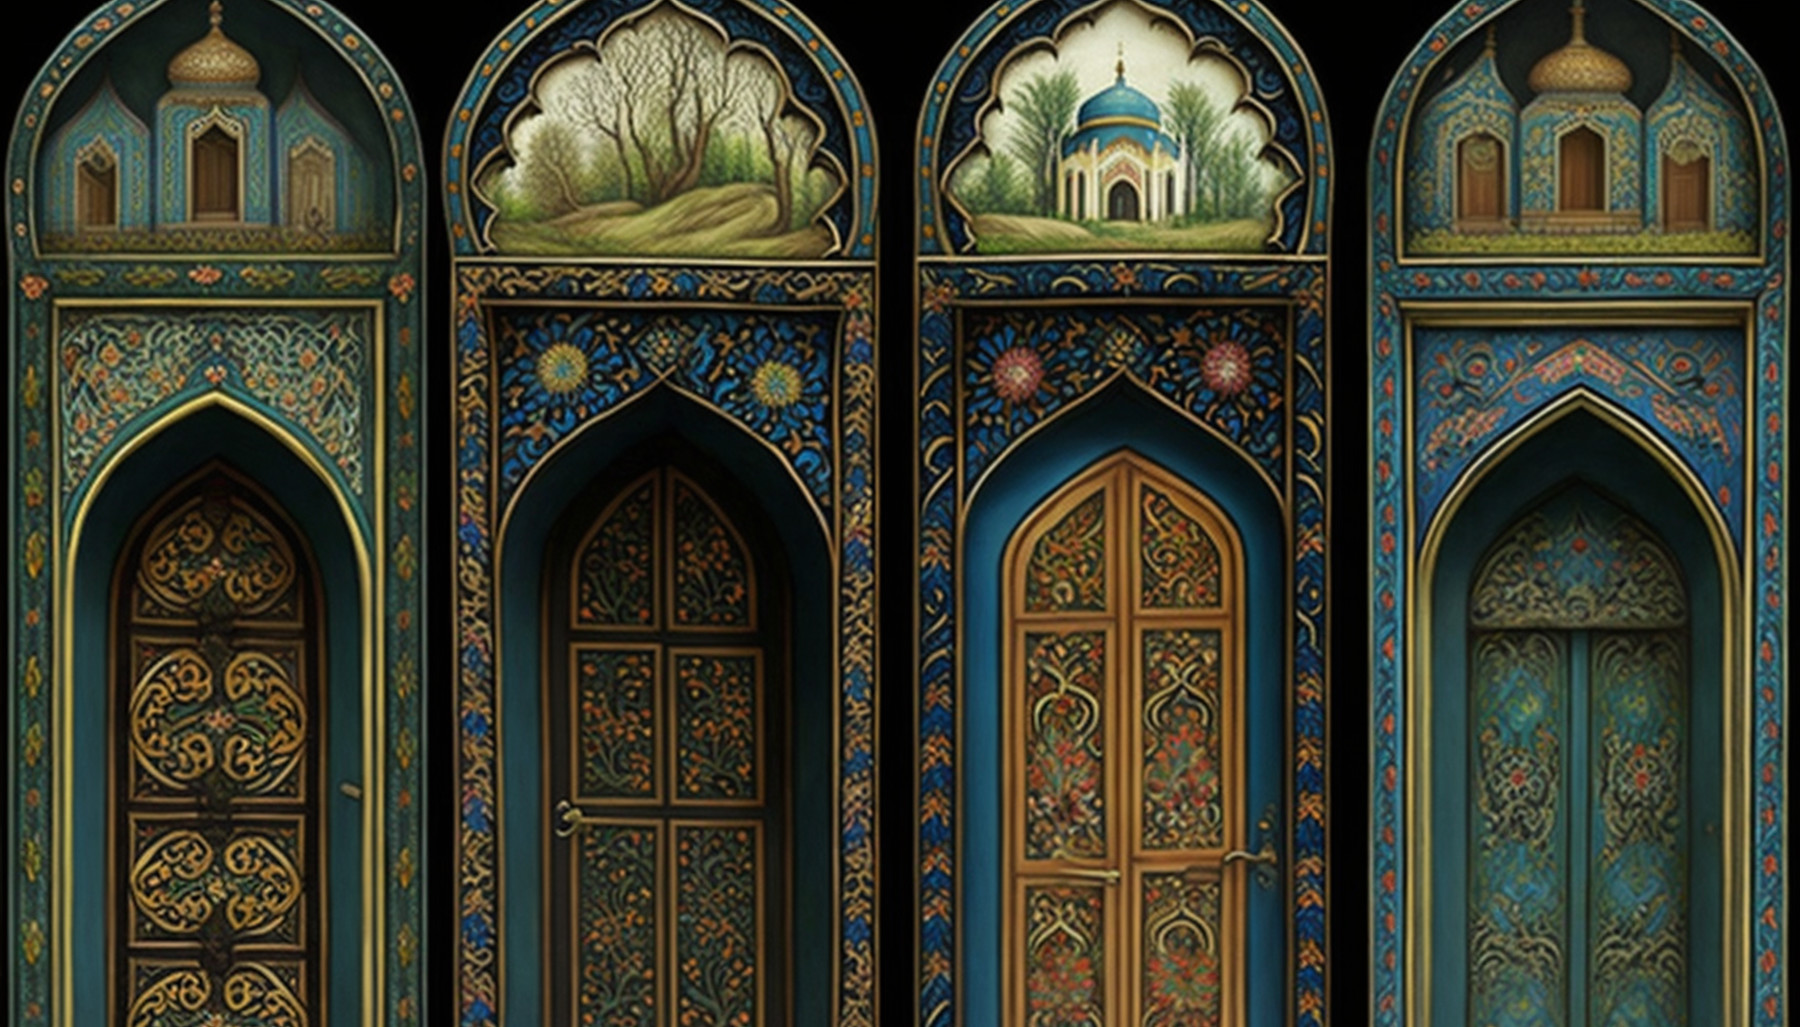 Firstprinciples Persian miniature painting doors islamic 7f7edd8f a7cf 4f12 96b9 00f0abe67029